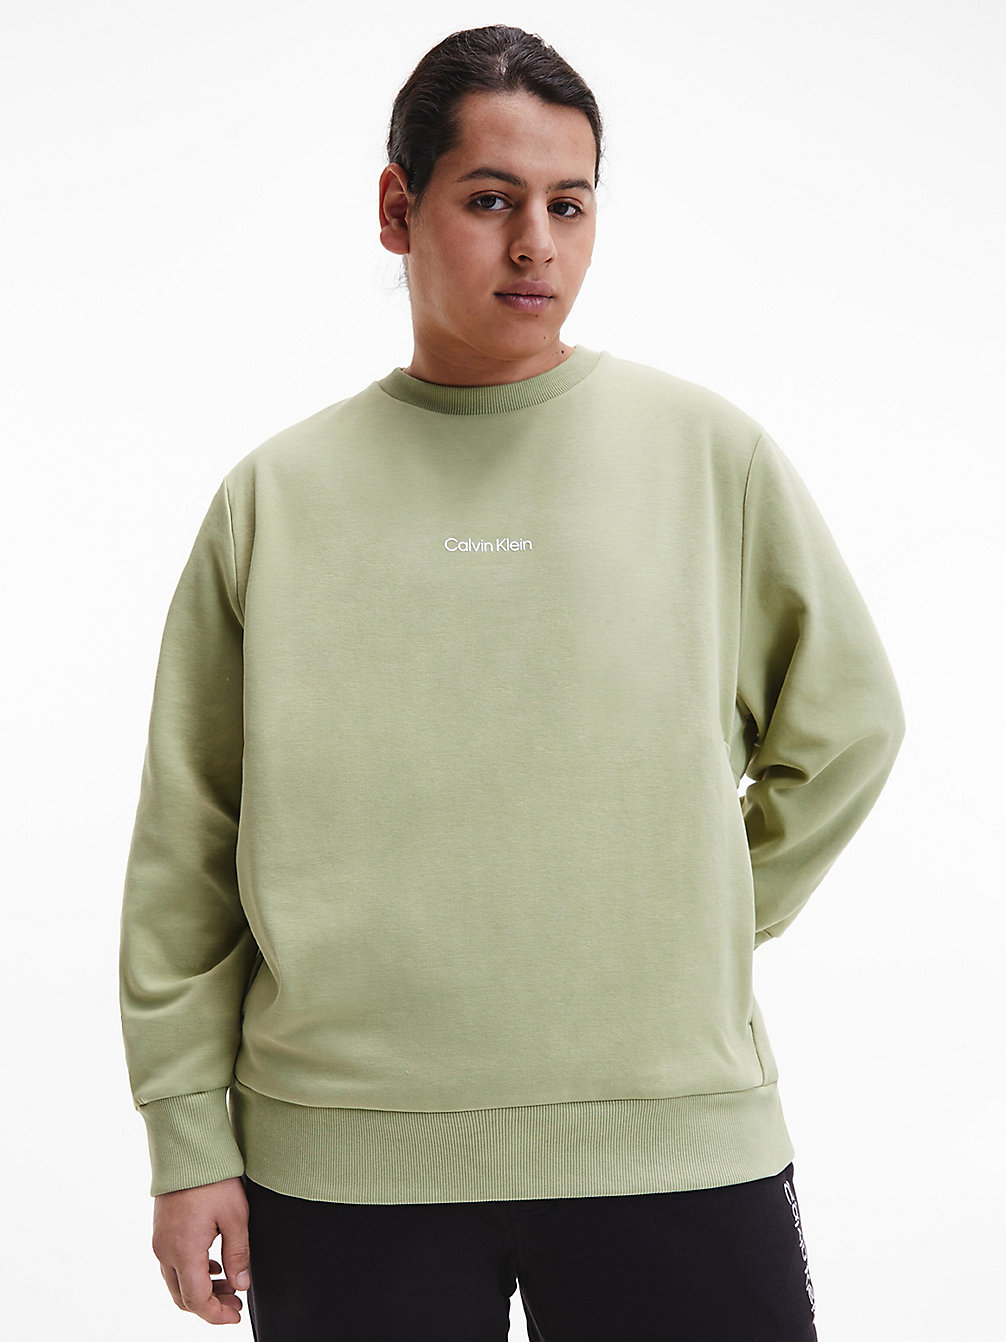 SAGE > Logo-Sweatshirt In Großen Größen > undefined Herren - Calvin Klein